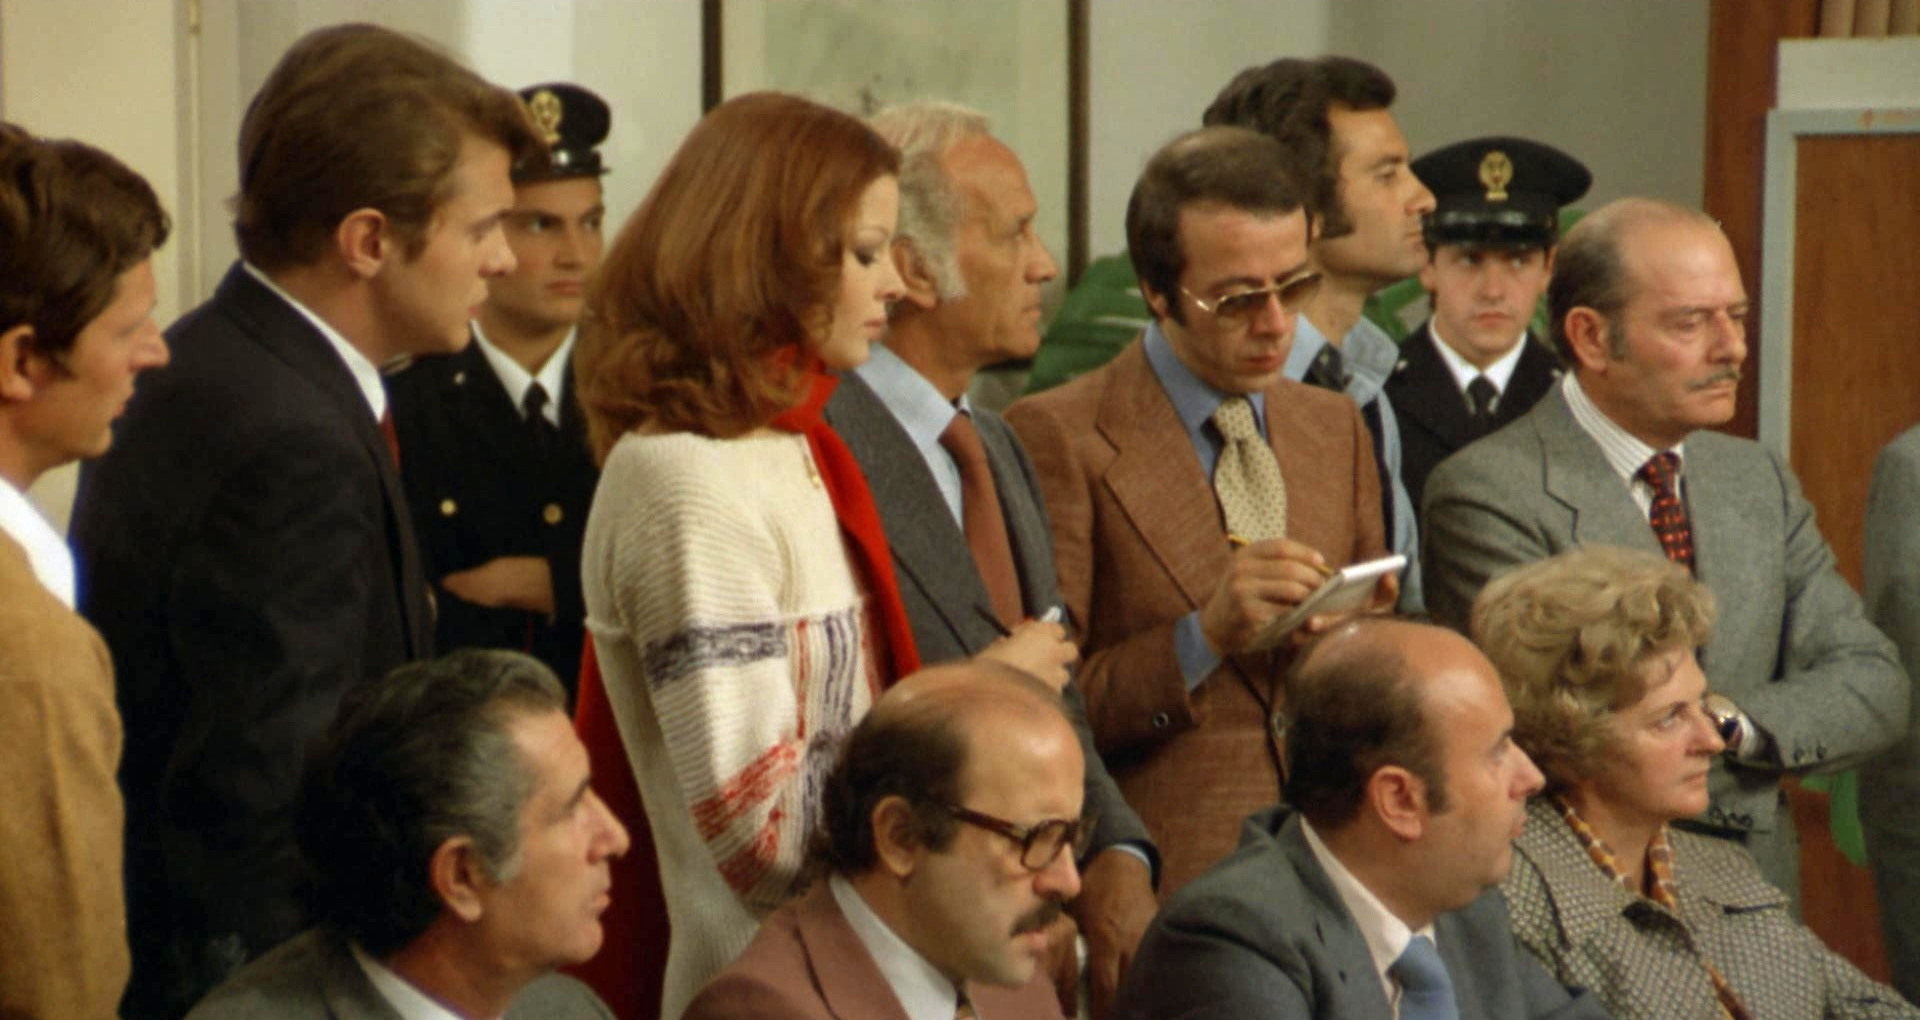 Il poliziotto è marcio (1974) Blonde with pointy chin at press conference.jpg